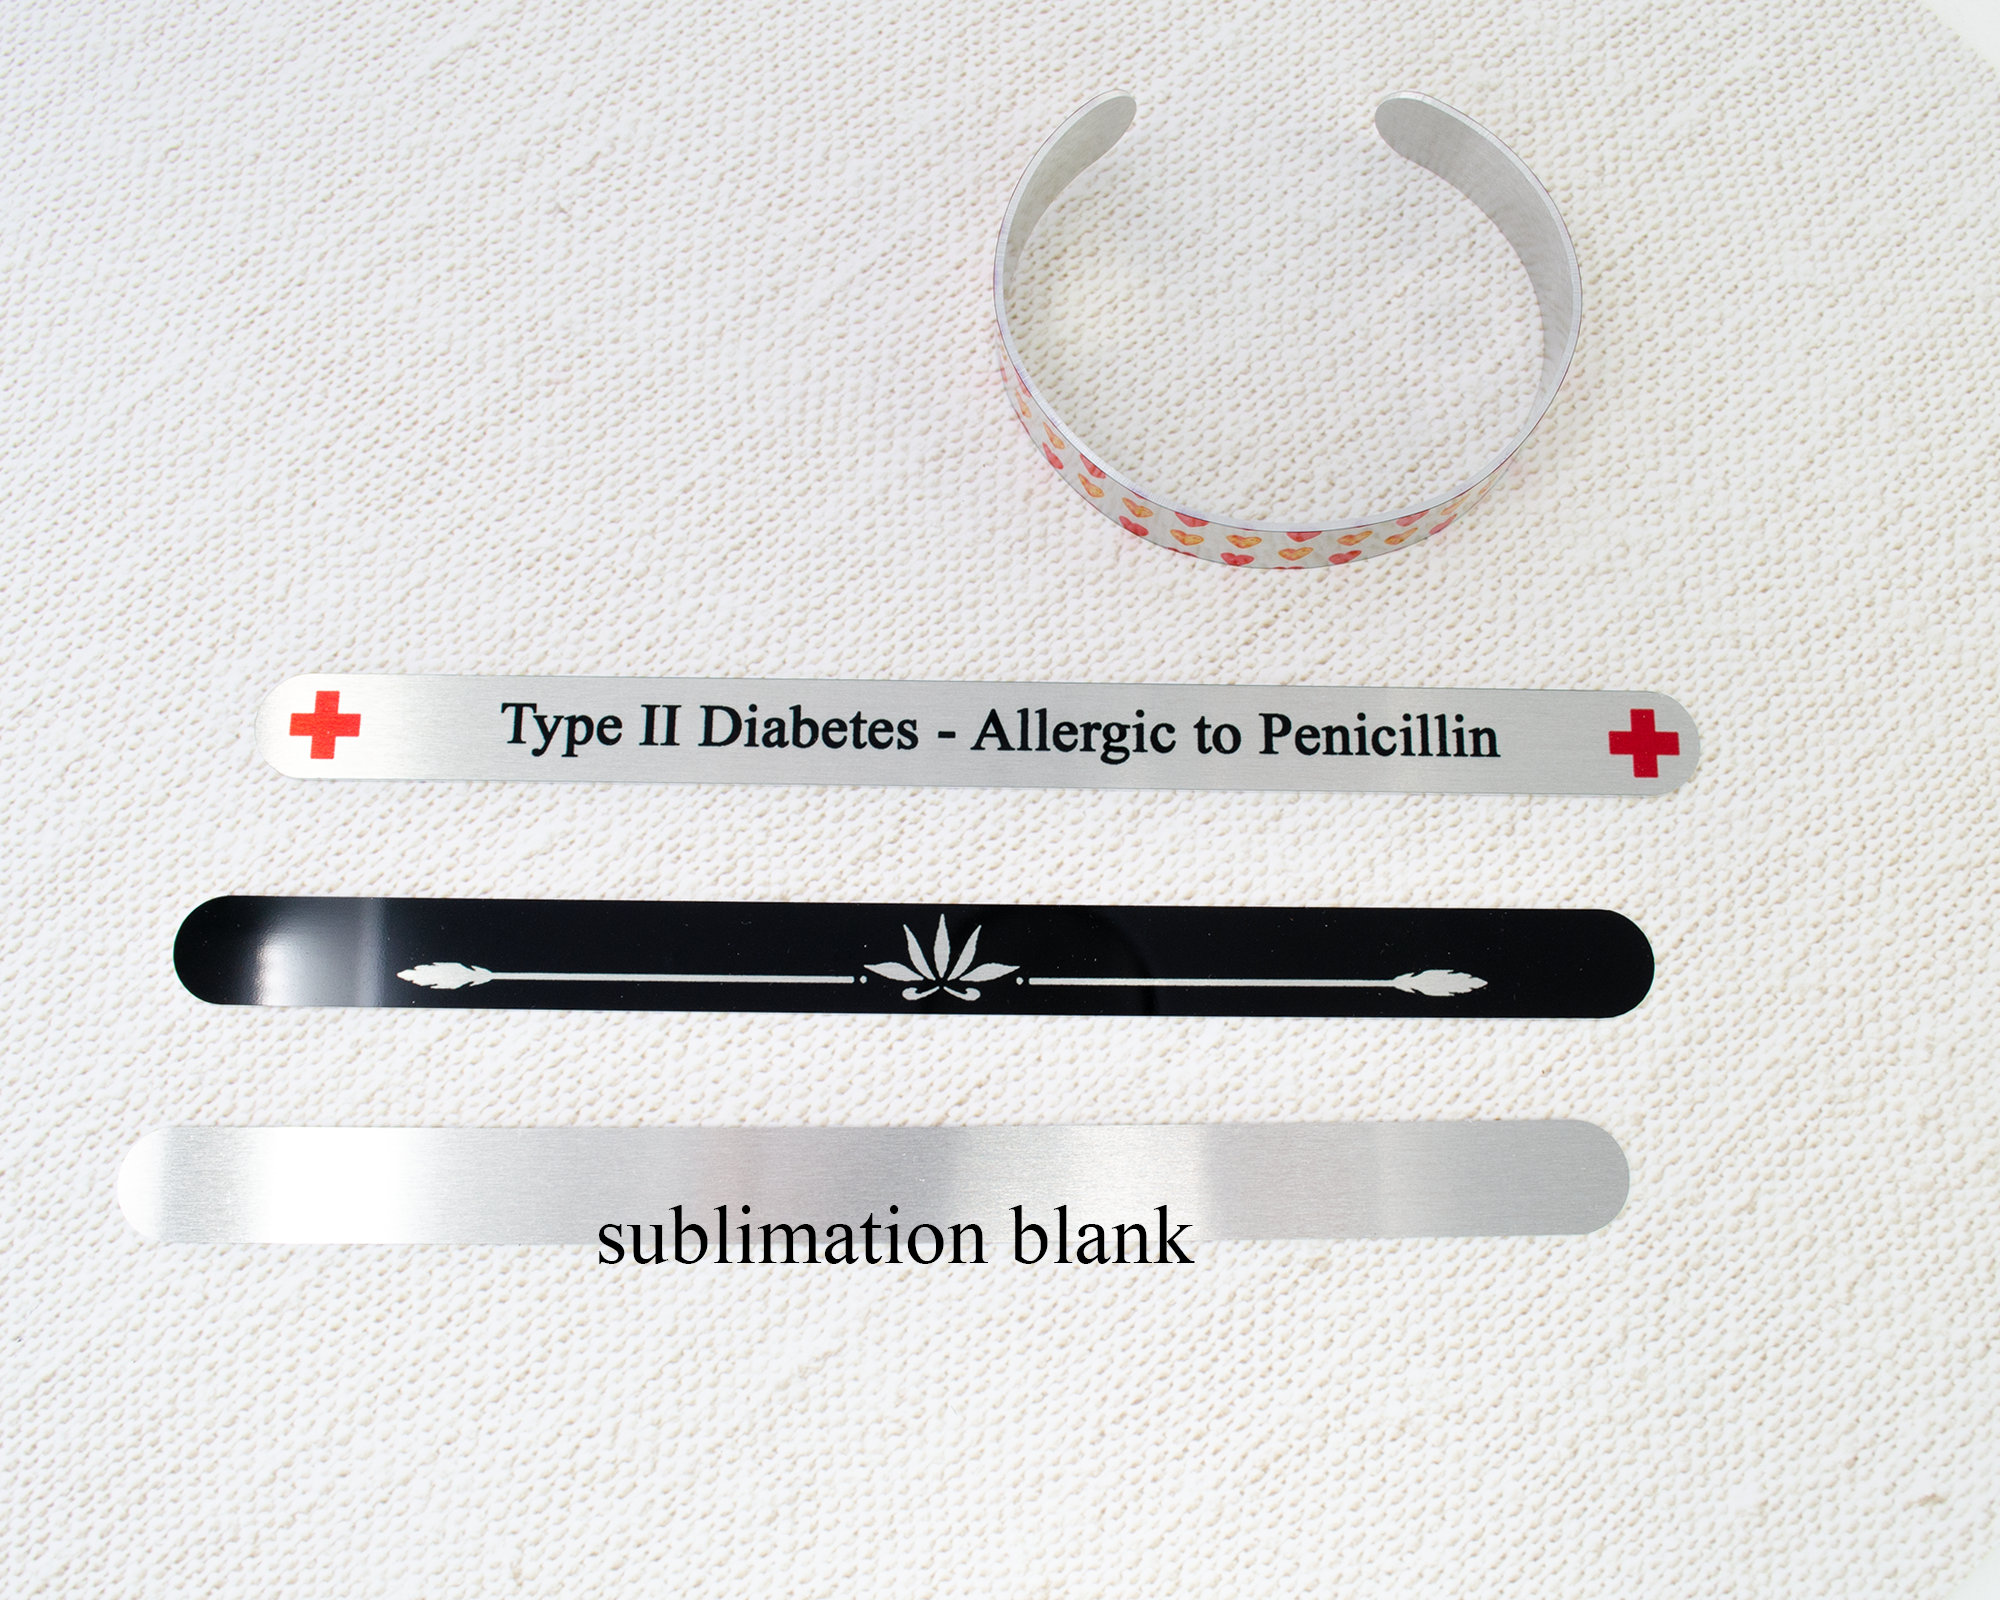 Sublimation Heart Bracelet – LA² DESIGNS